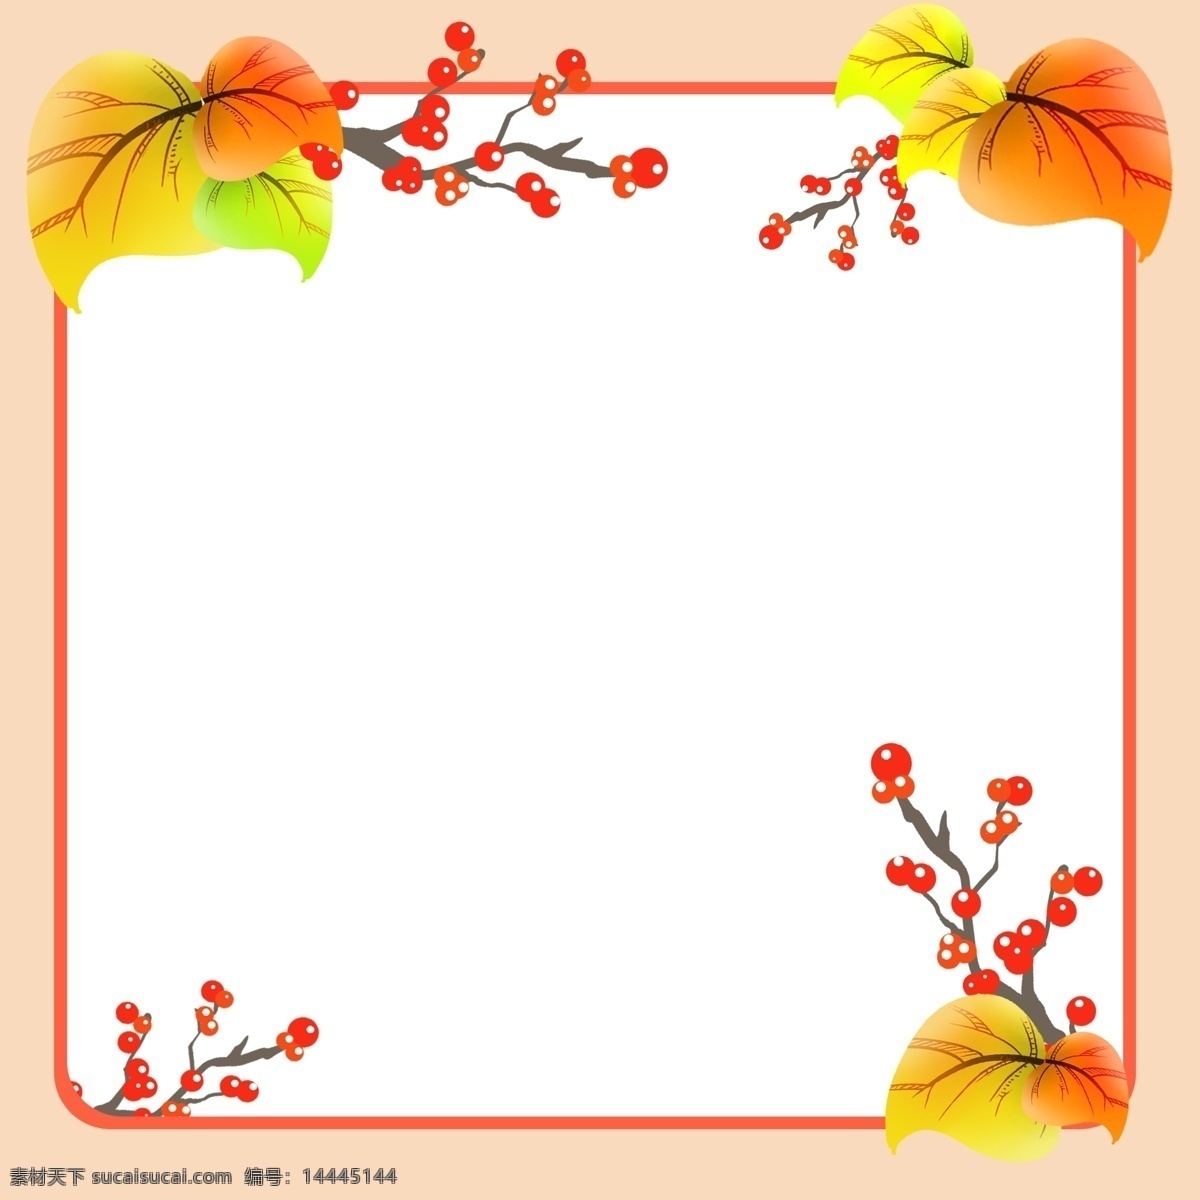 手绘 秋季 水果 边框 红色的水果 卡通边框 手绘秋季边框 创意的边框 漂亮的边框 美丽的边框